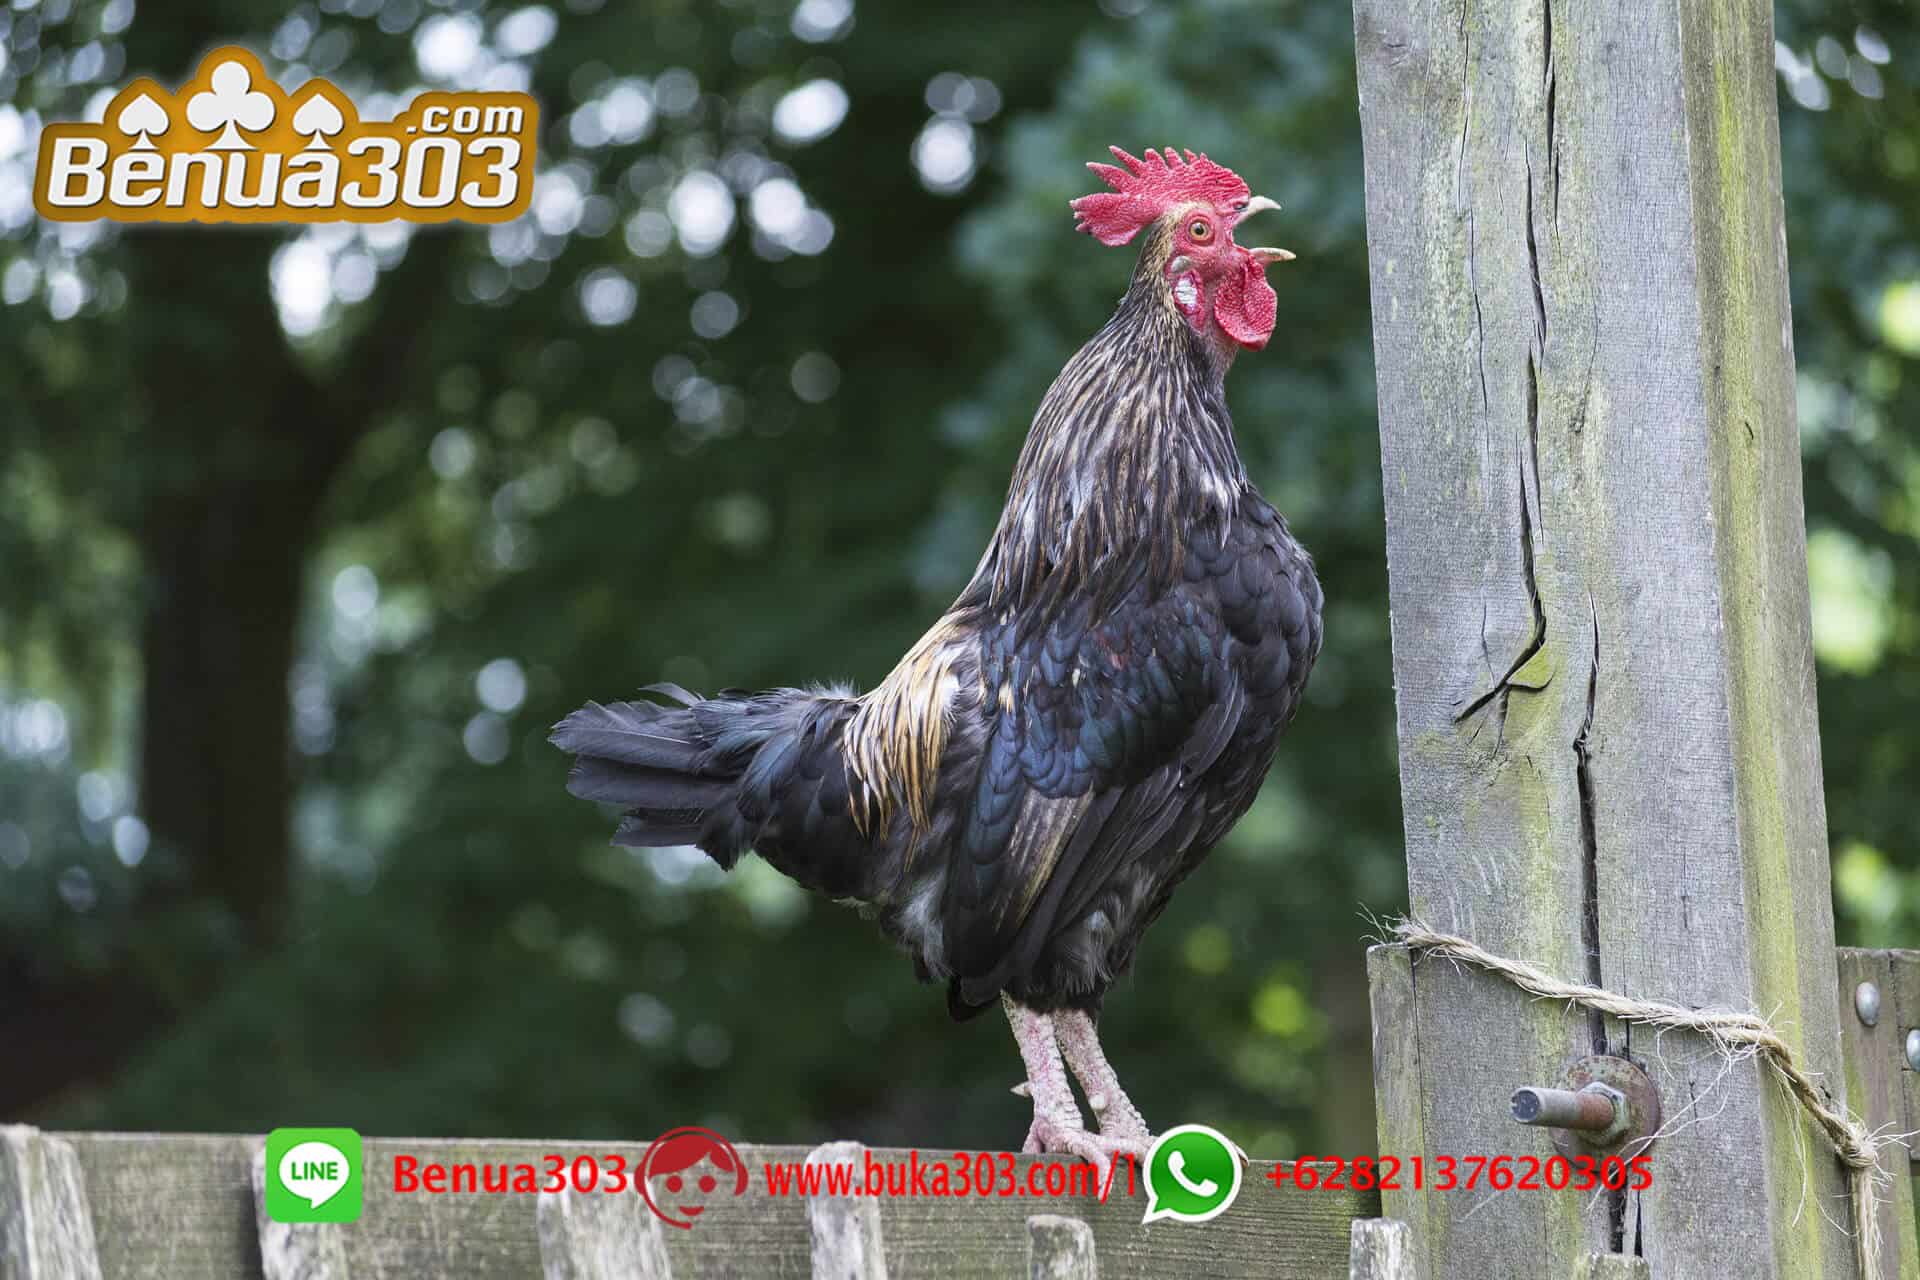 Situs S128 Sabung Ayam Online